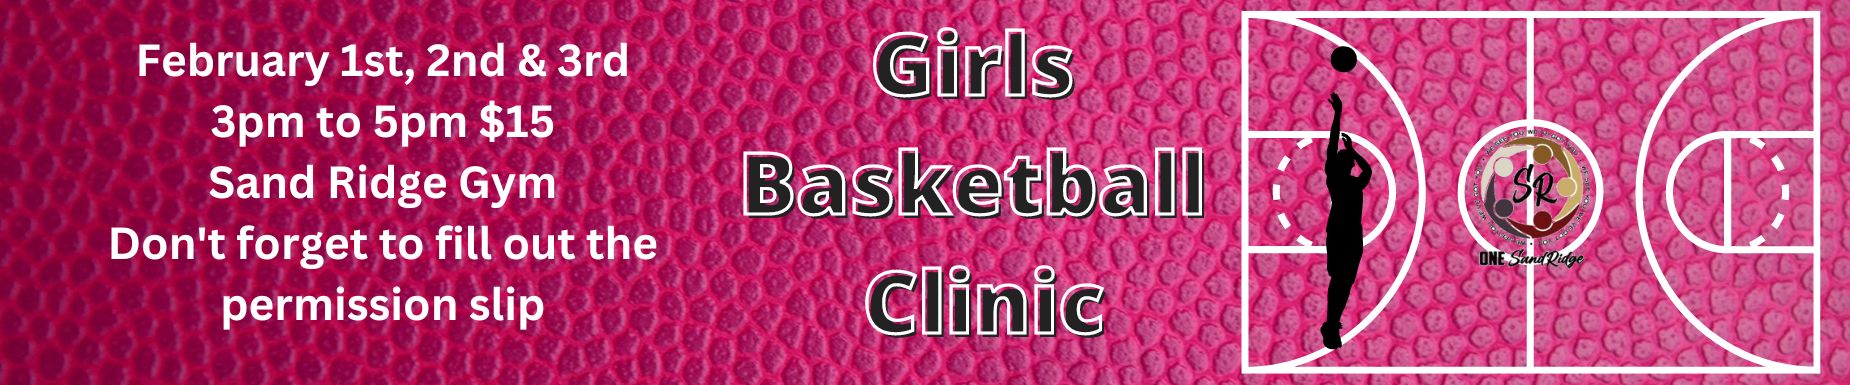 Girls Baskeball Clinics